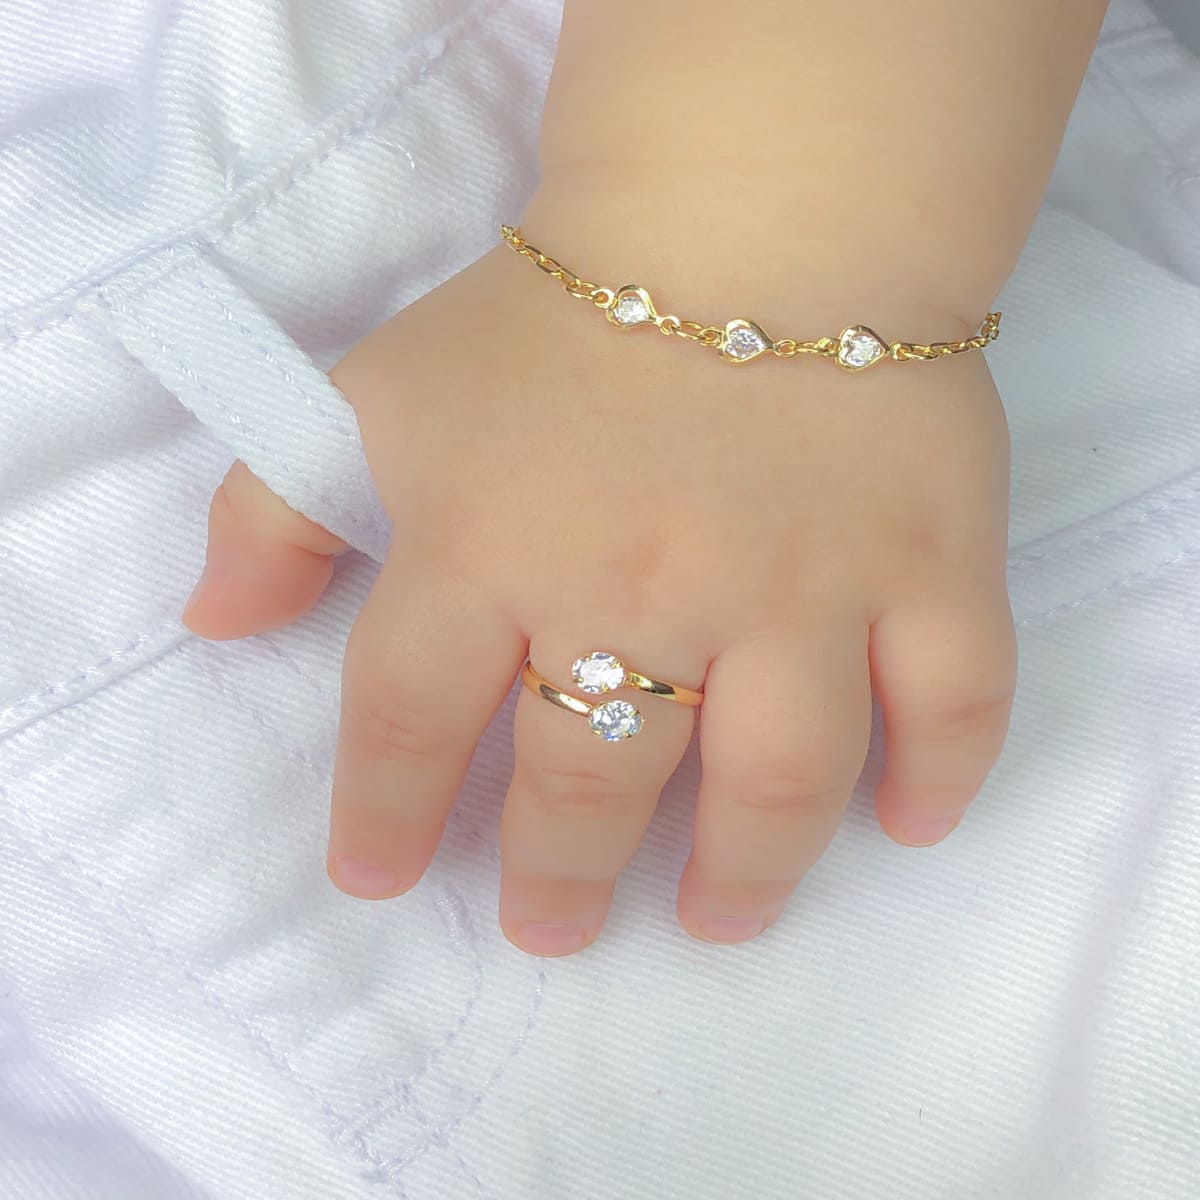 Pulseira Infantil de Corações e Zircônias Cristal para Bebê Banhado a Ouro 18k - PL49